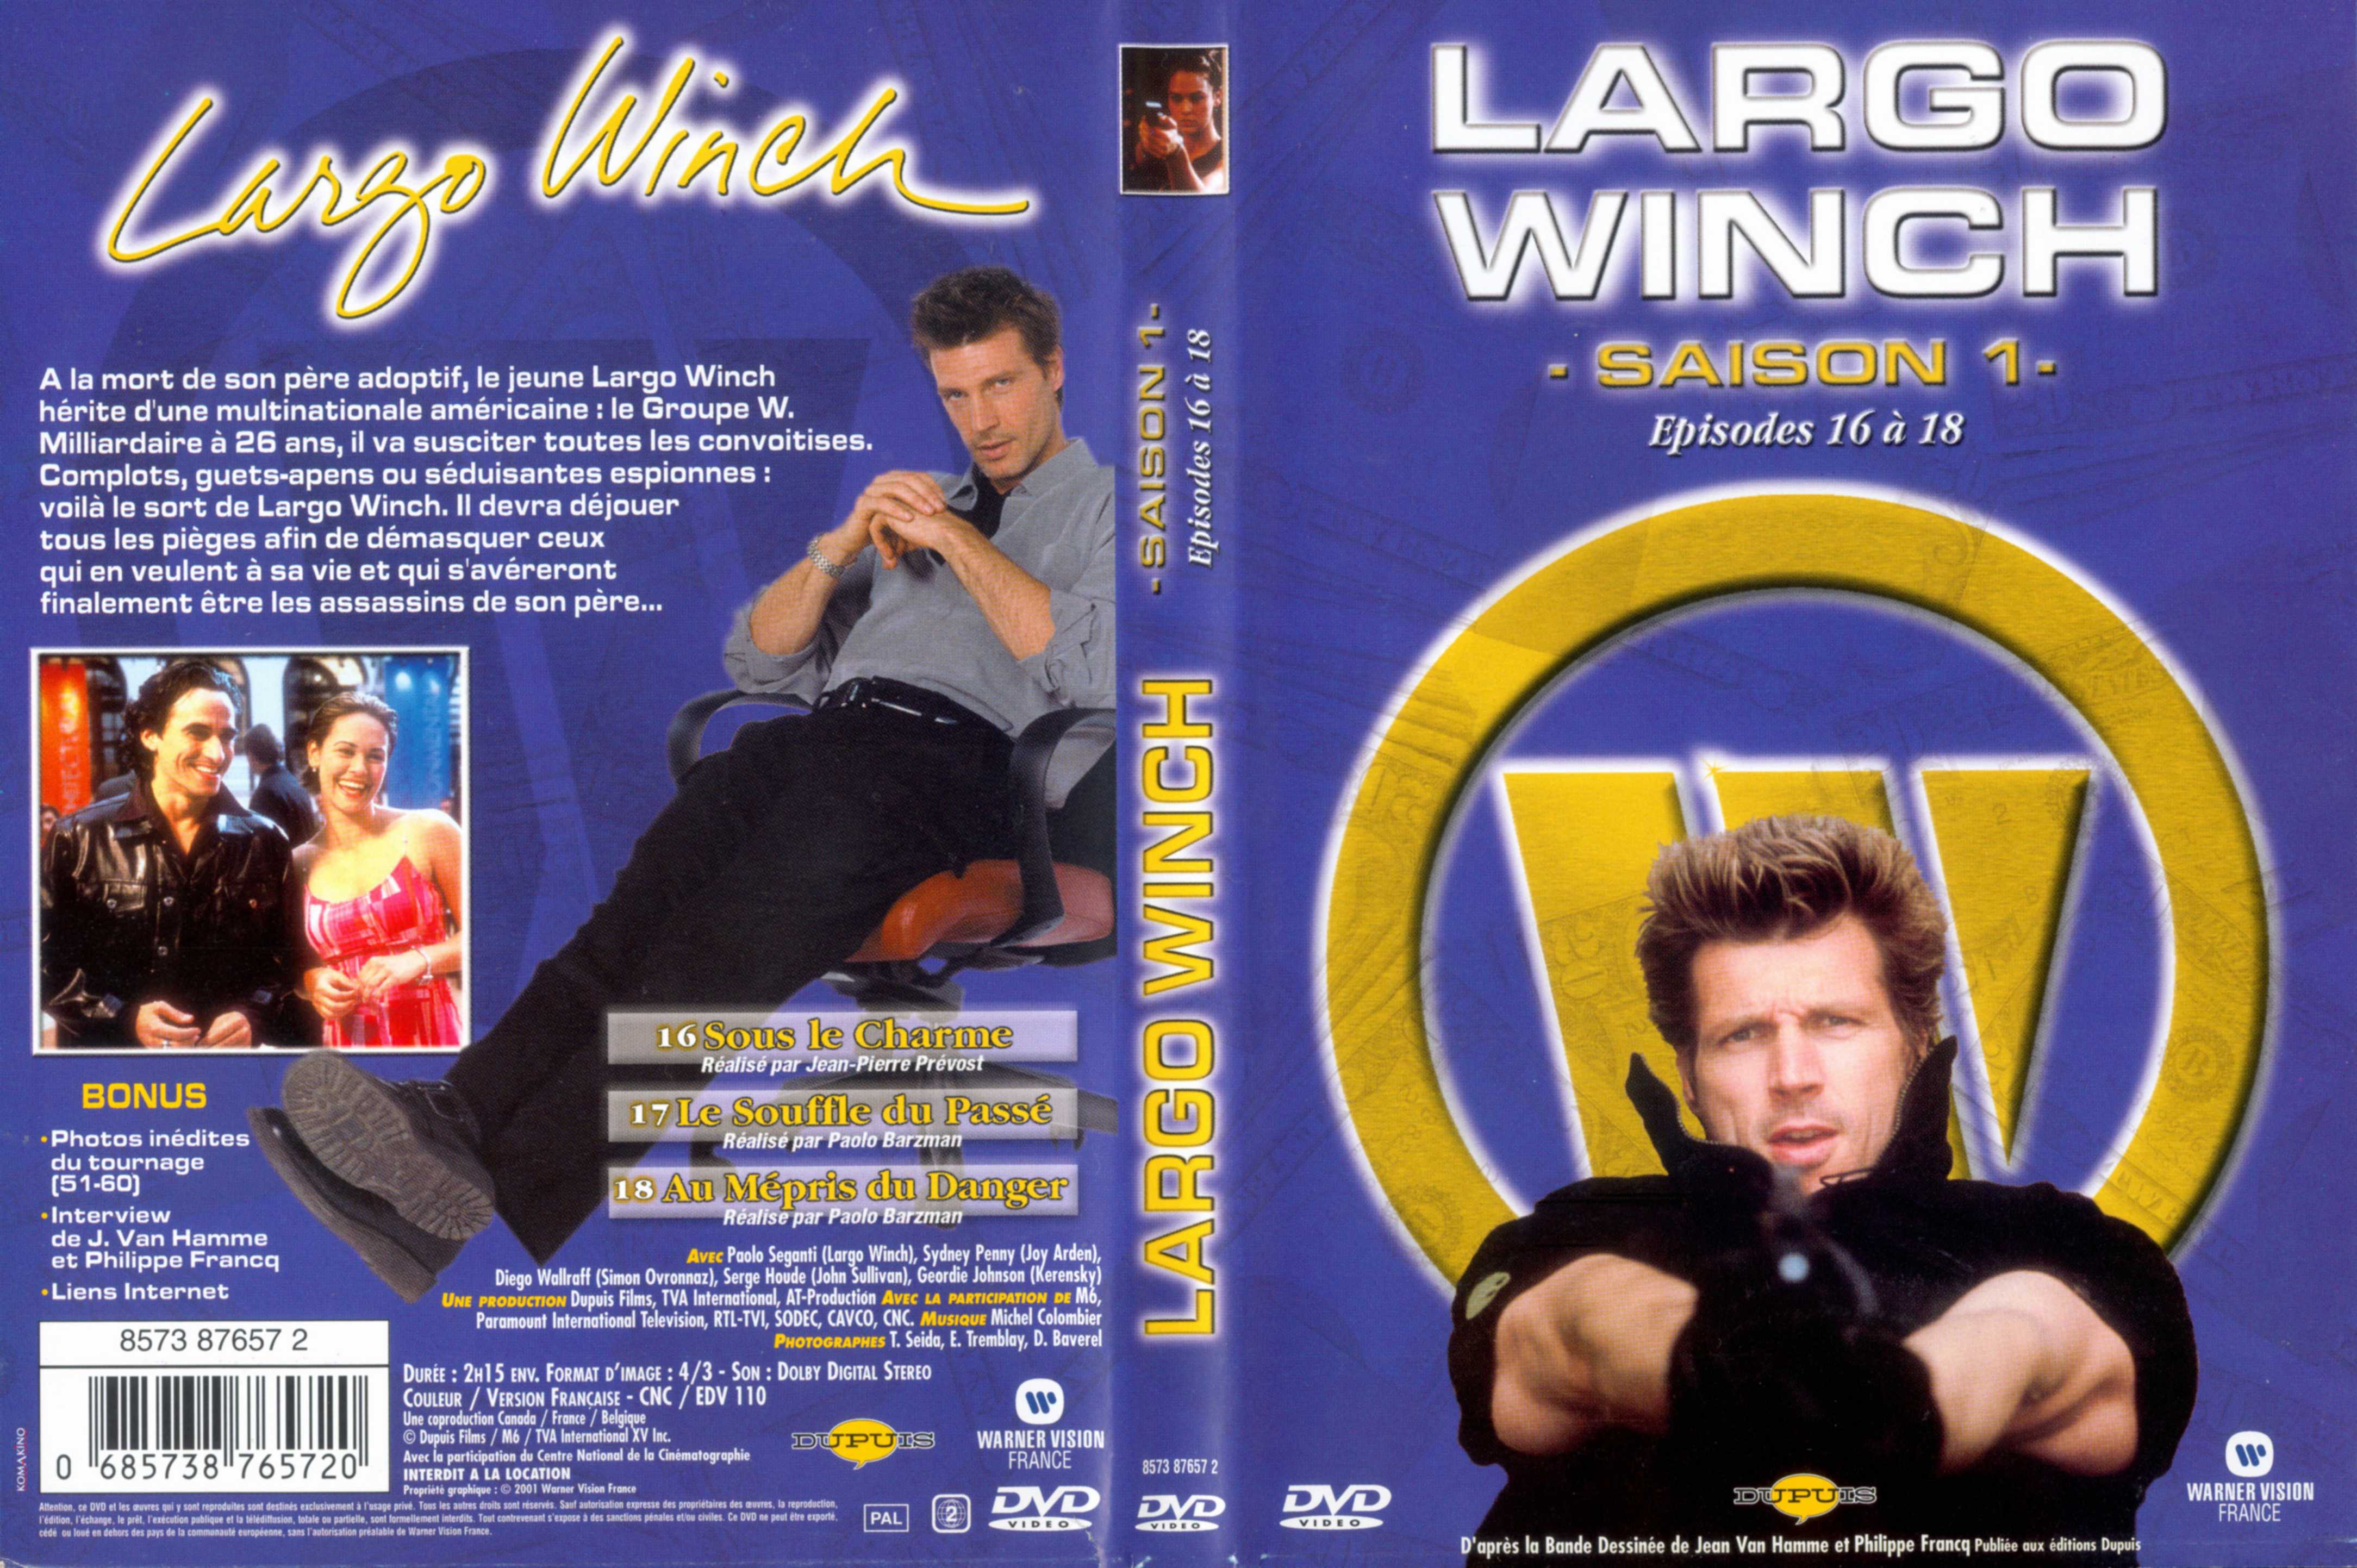 Jaquette DVD Largo Winch Saison 1 vol 06